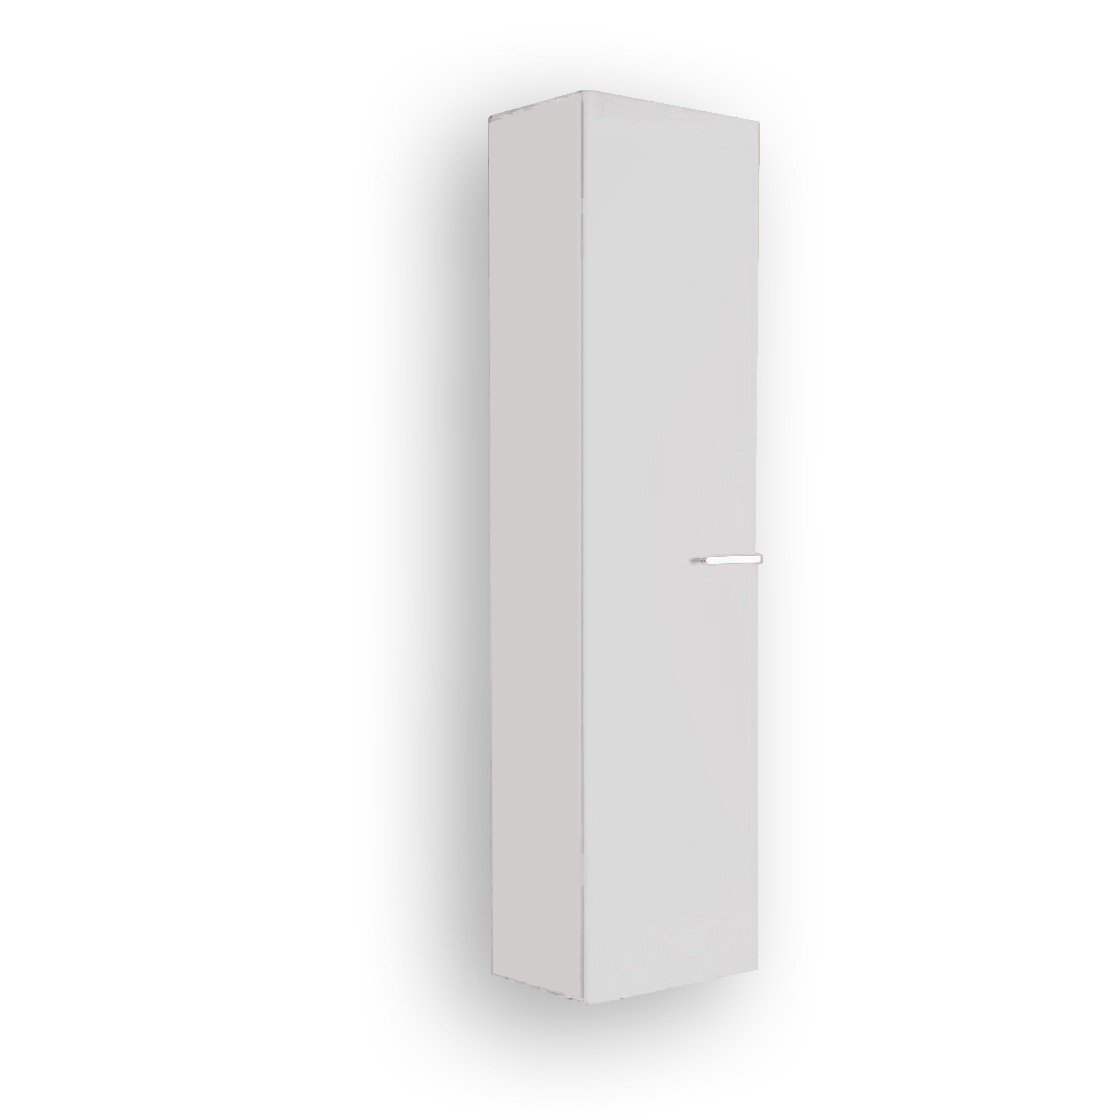 Ideal Standard Imagine T0703WG подвесной шкаф/пенал для ванной комнаты, правый, цвет (белый лак) на распродаже